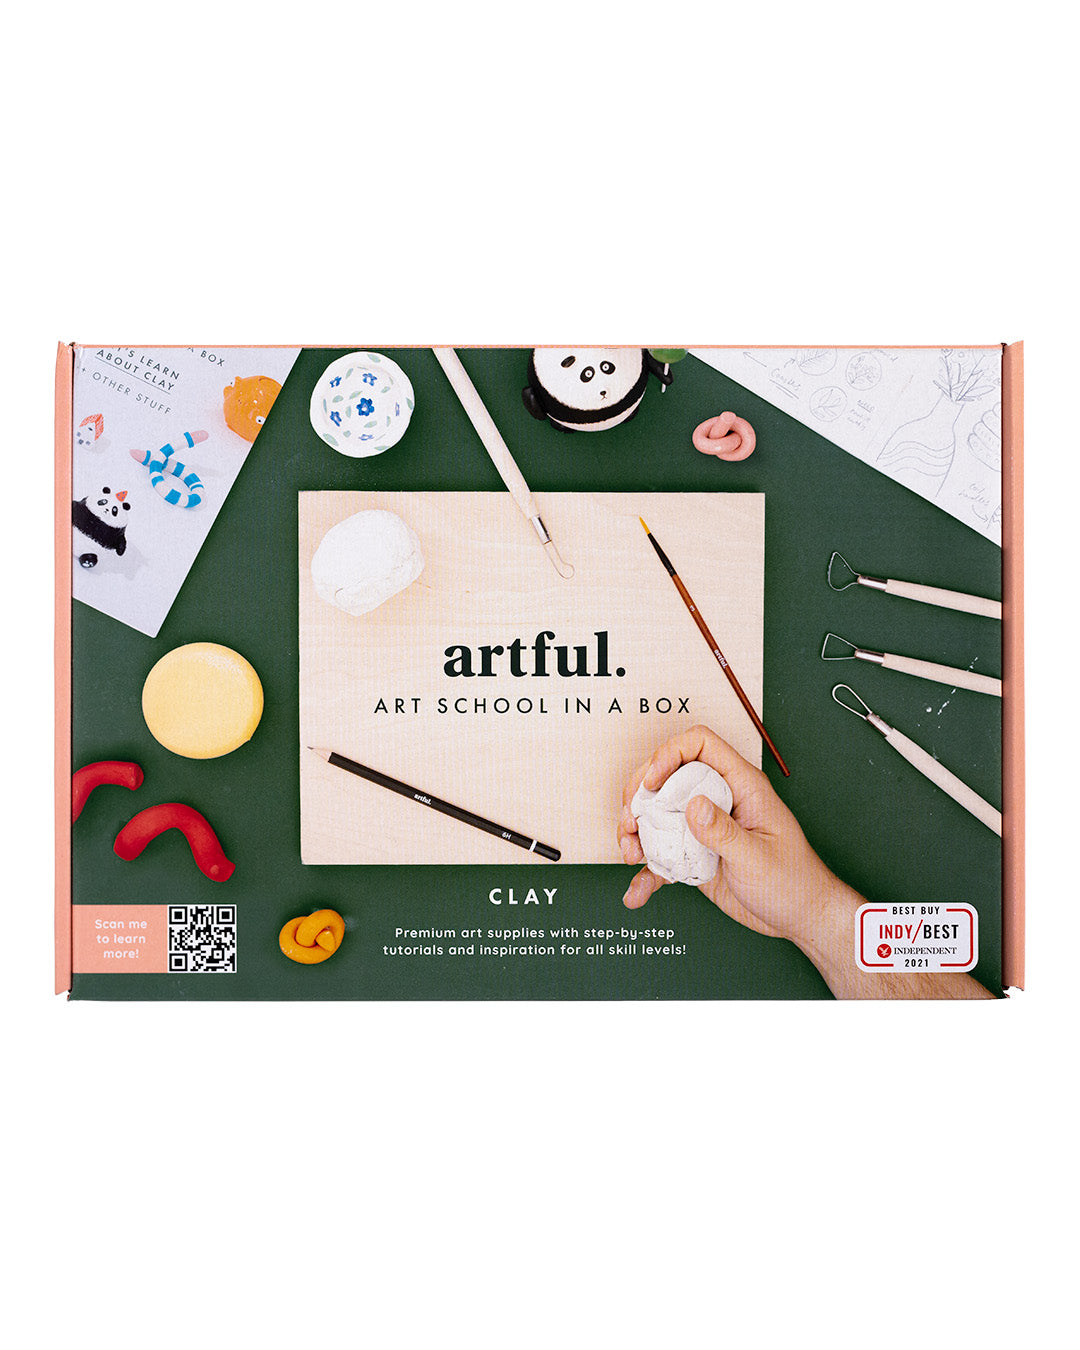 Artful: Art School in a Box - Clay Edition (7251)